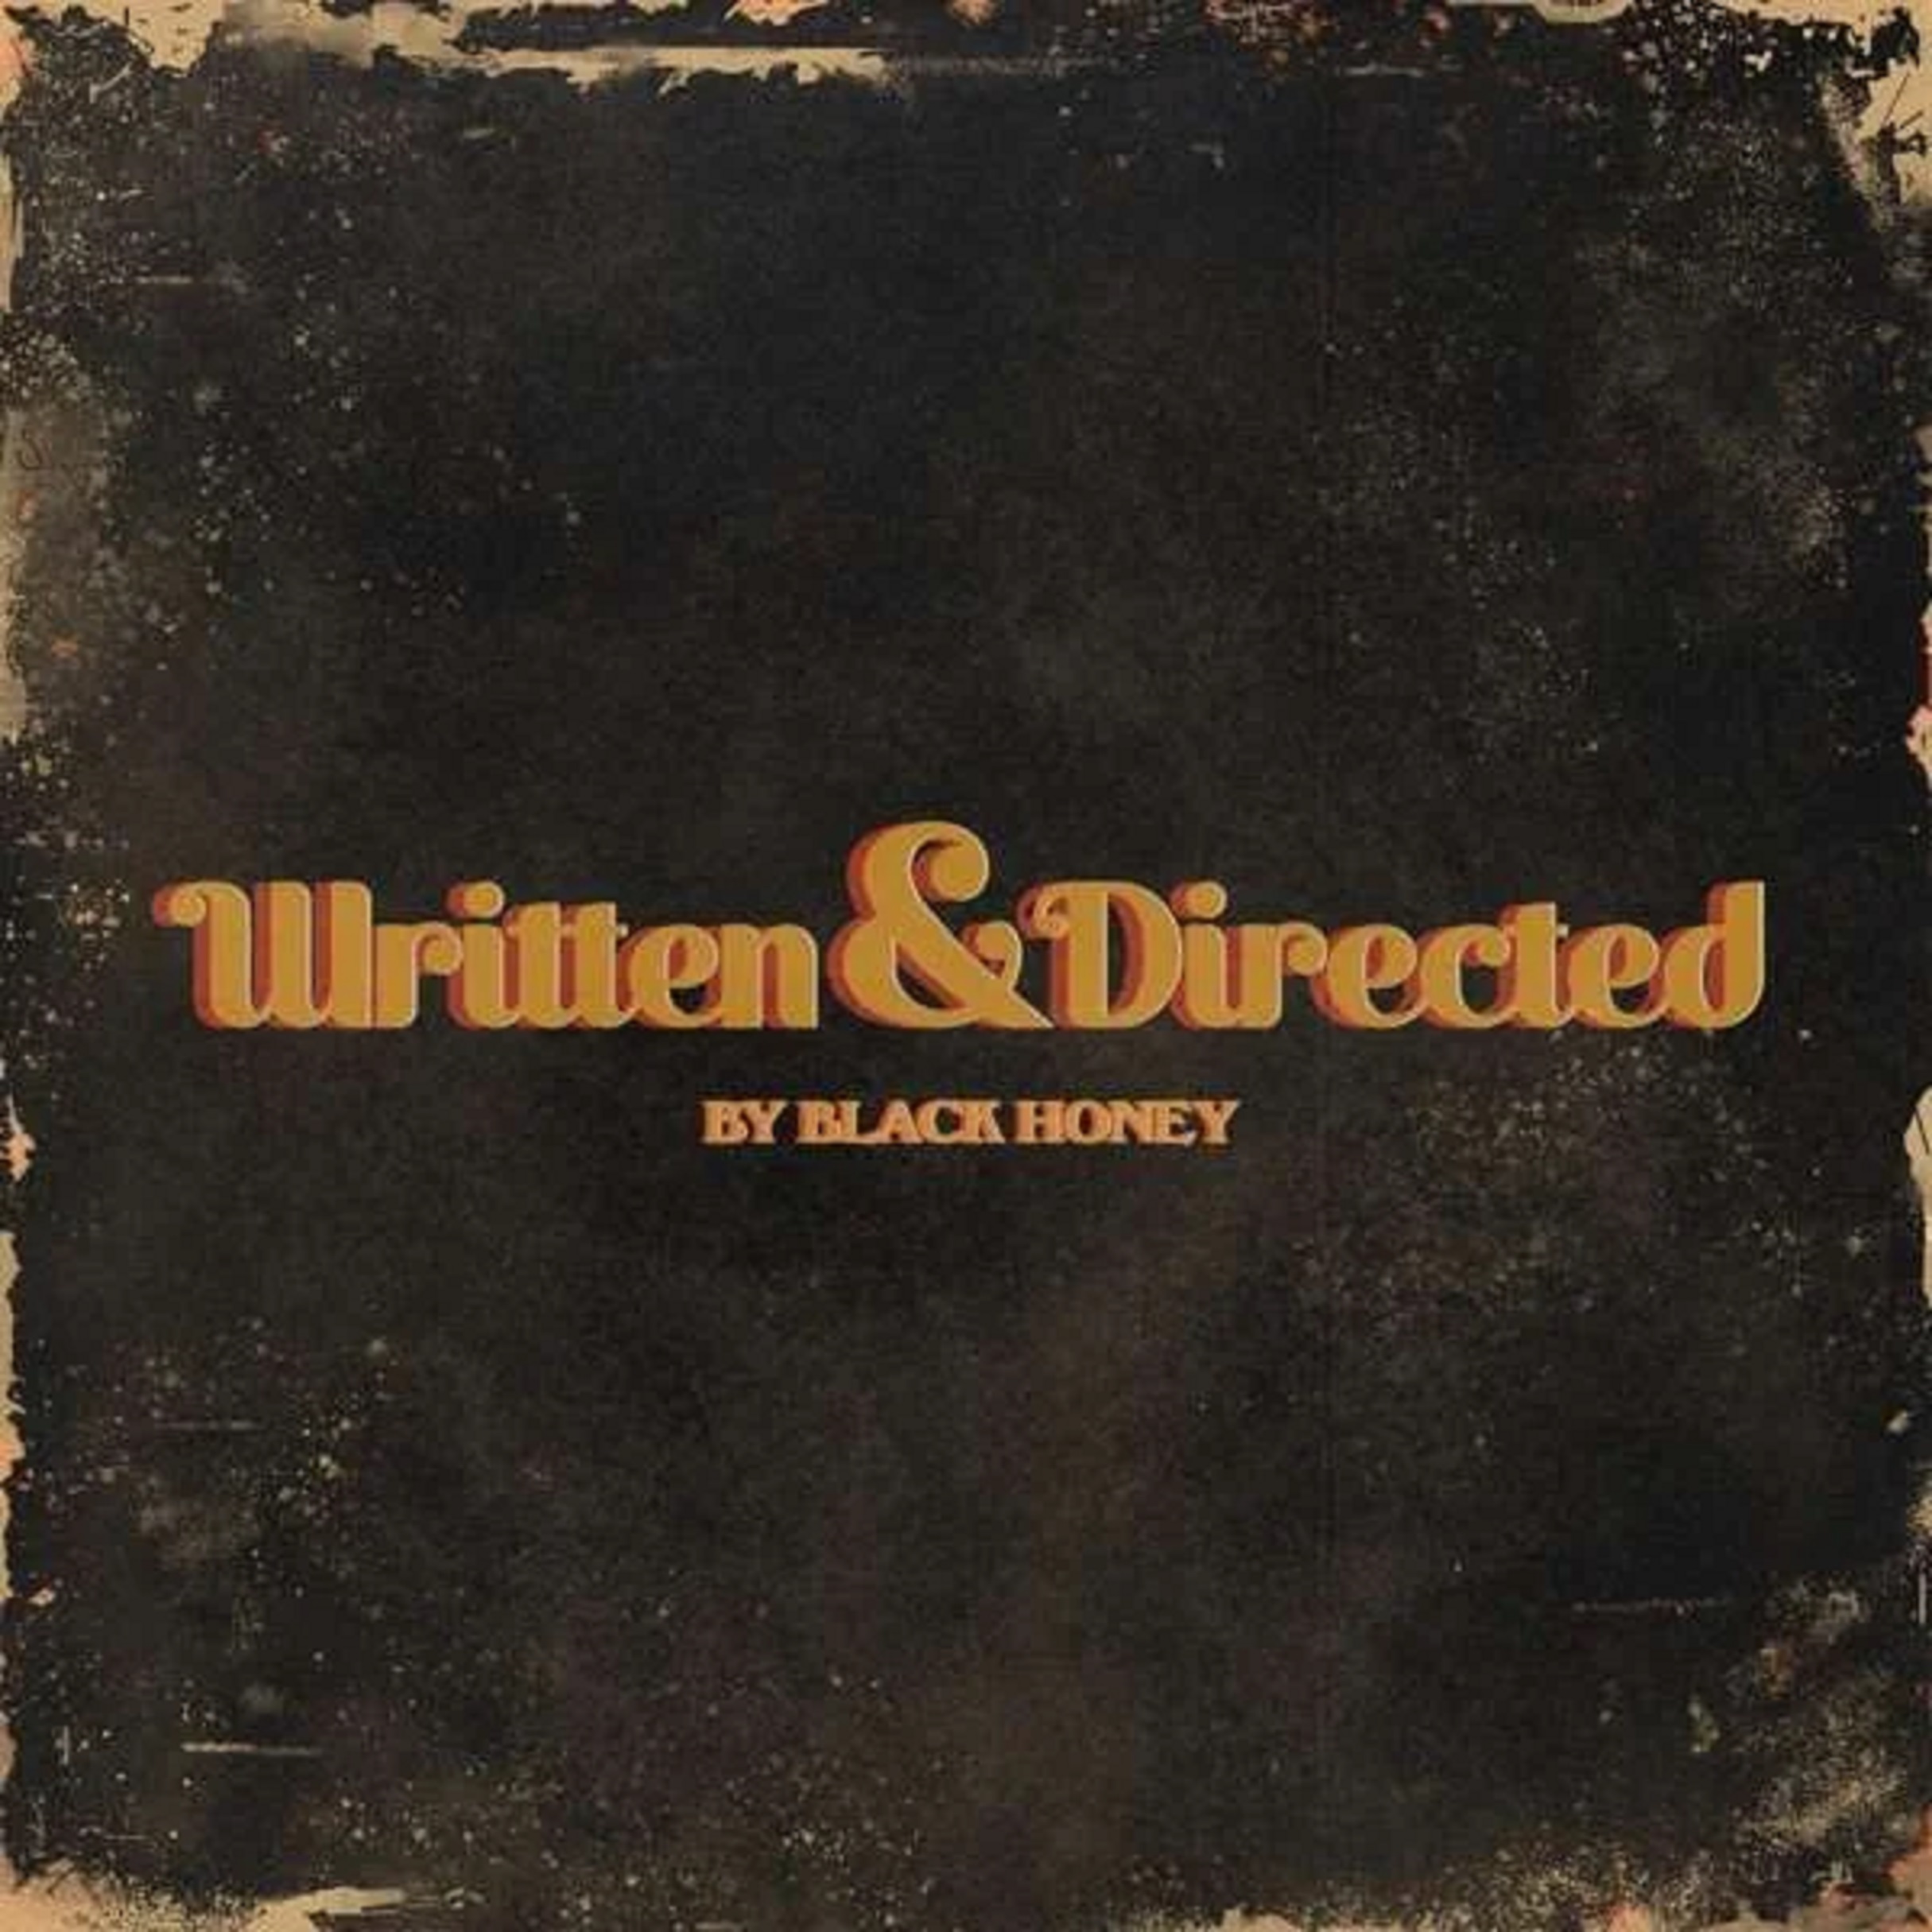 Written & Directed | Black Honey